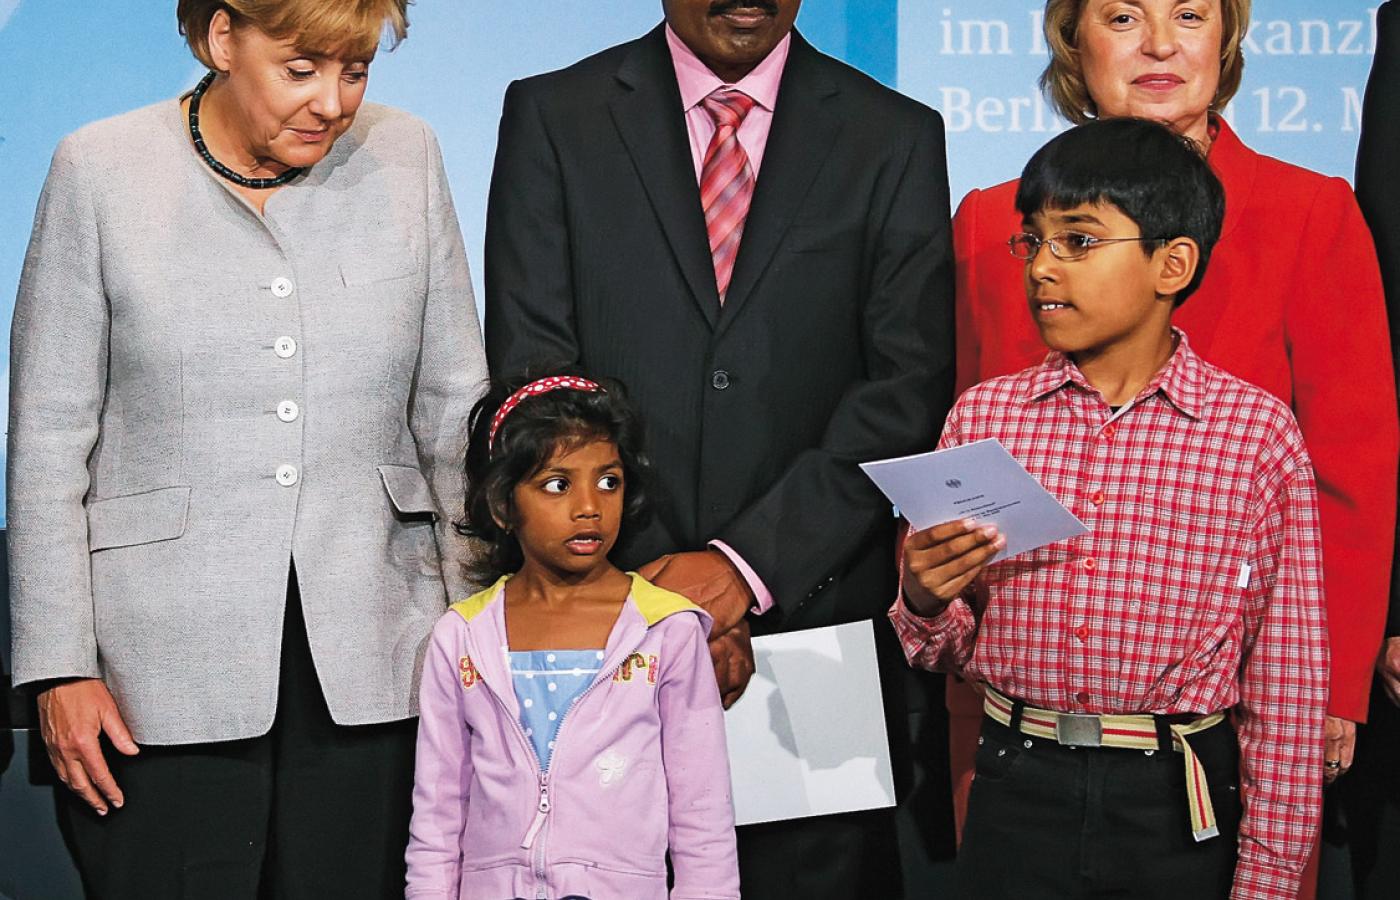 Kanclerz Angela Merkel z przybyłą z Indii rodziną, której przyznano obywatelstwo Niemiec.